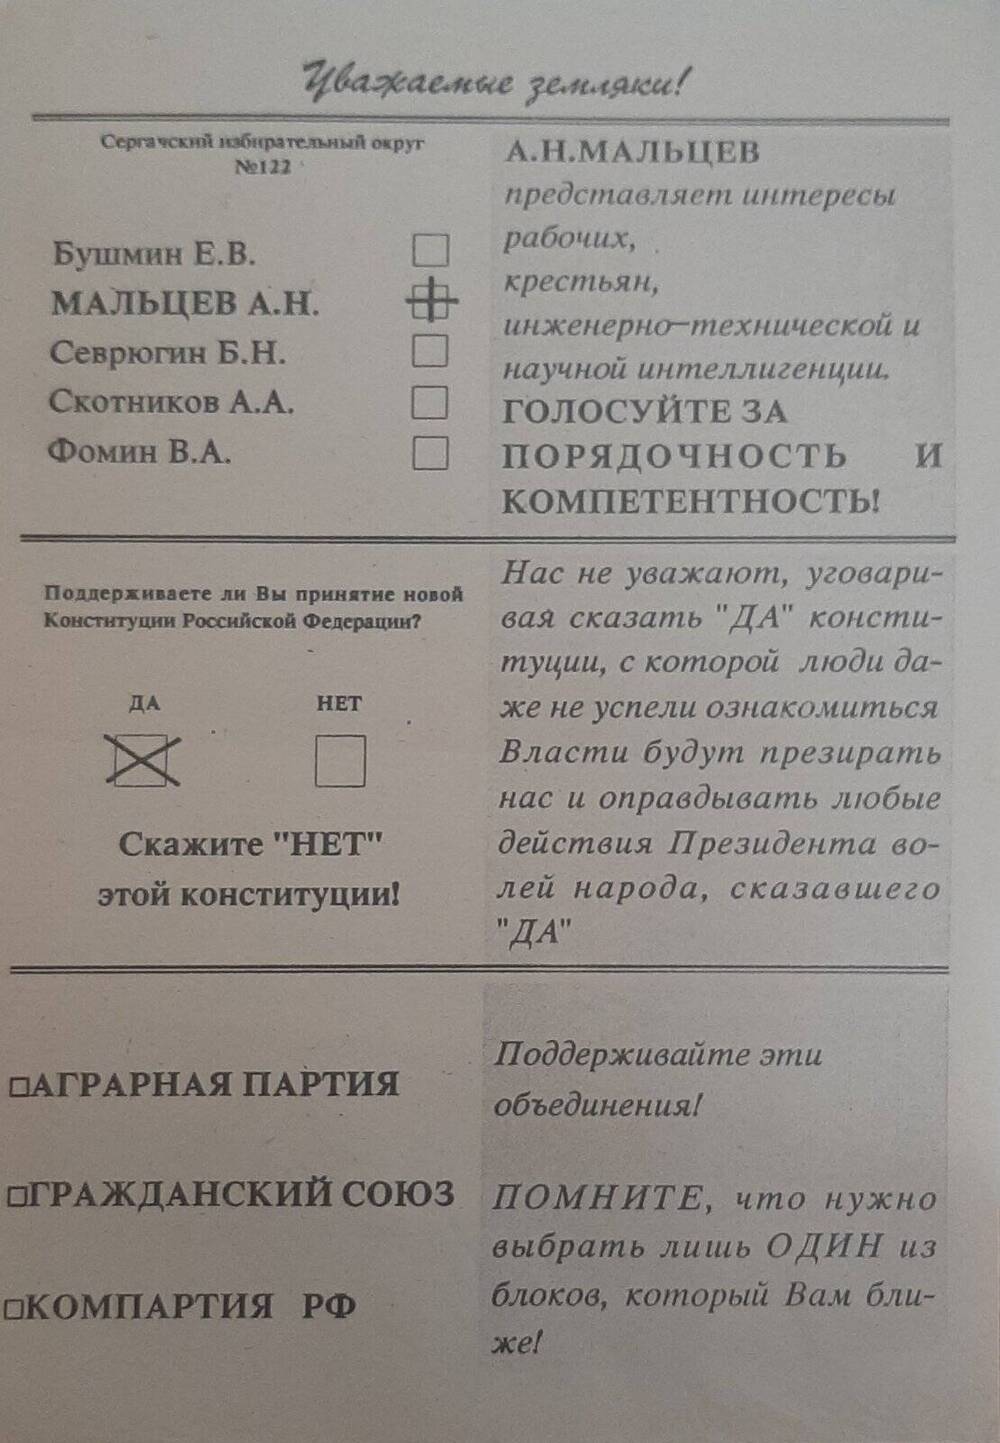 Листовка агитационная в поддержку Мальцева А.М. на должность в депутаты Госдуму